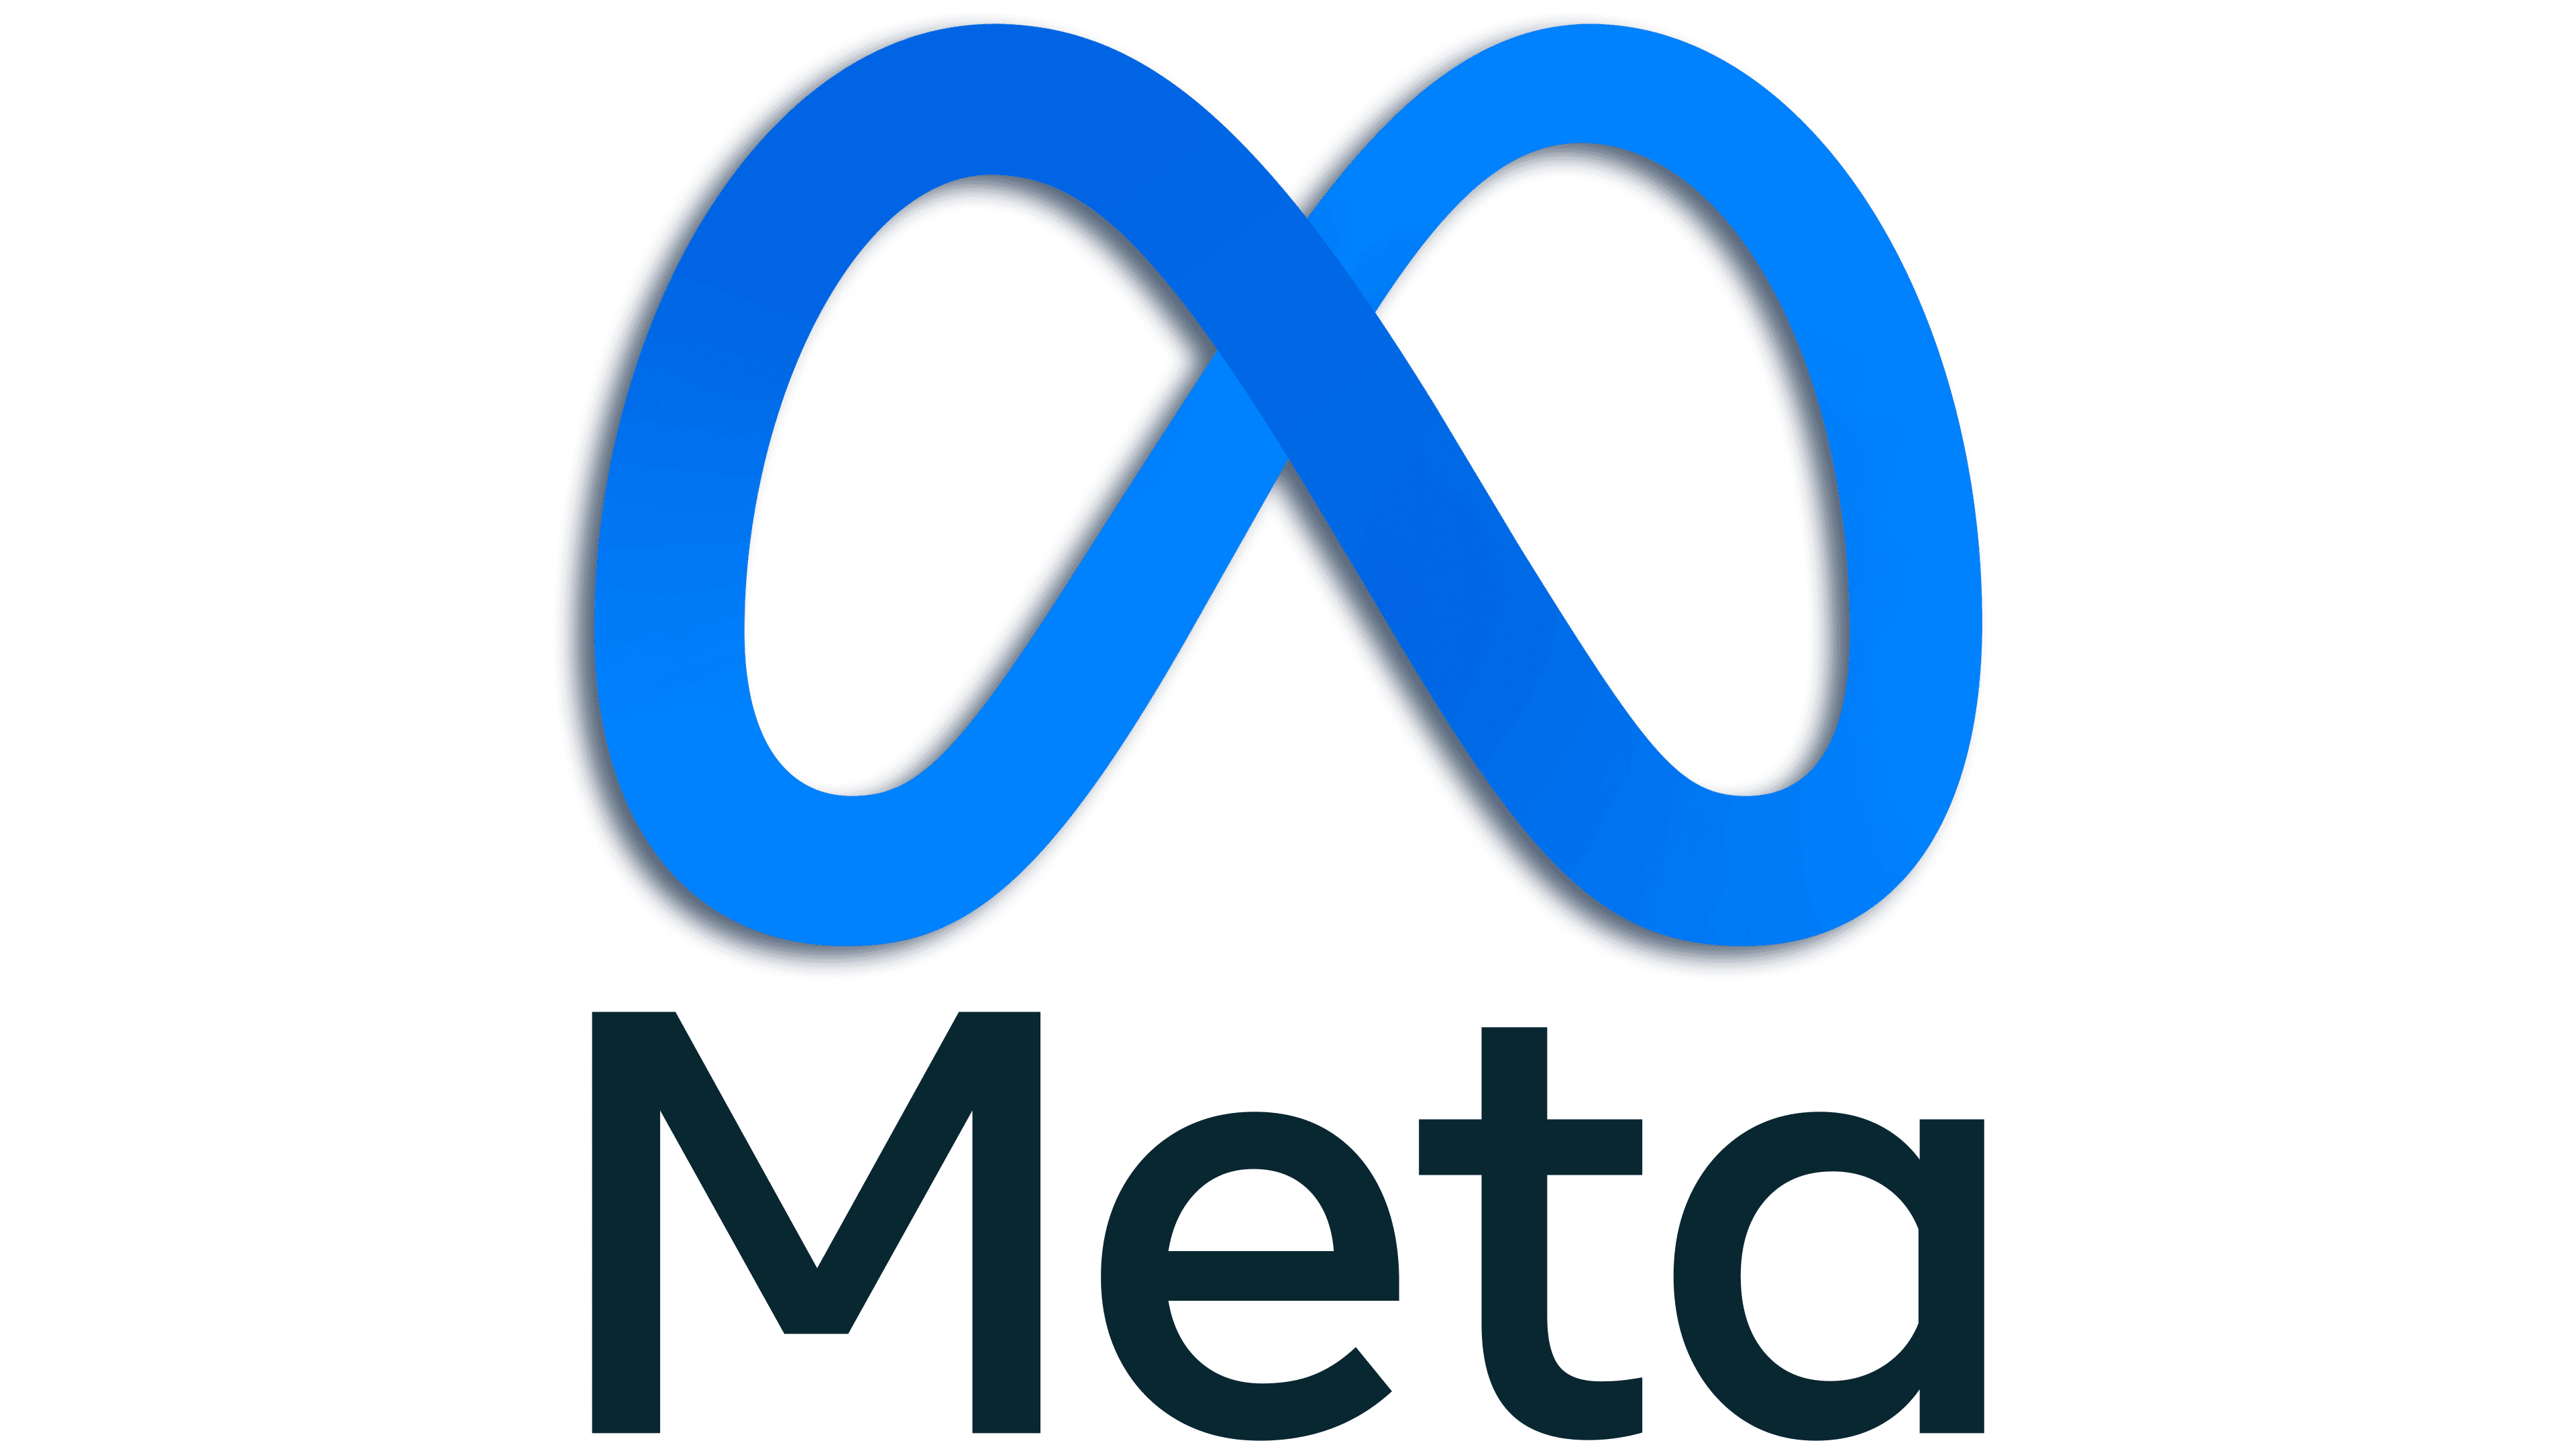 Meta Facebook logo, logotype